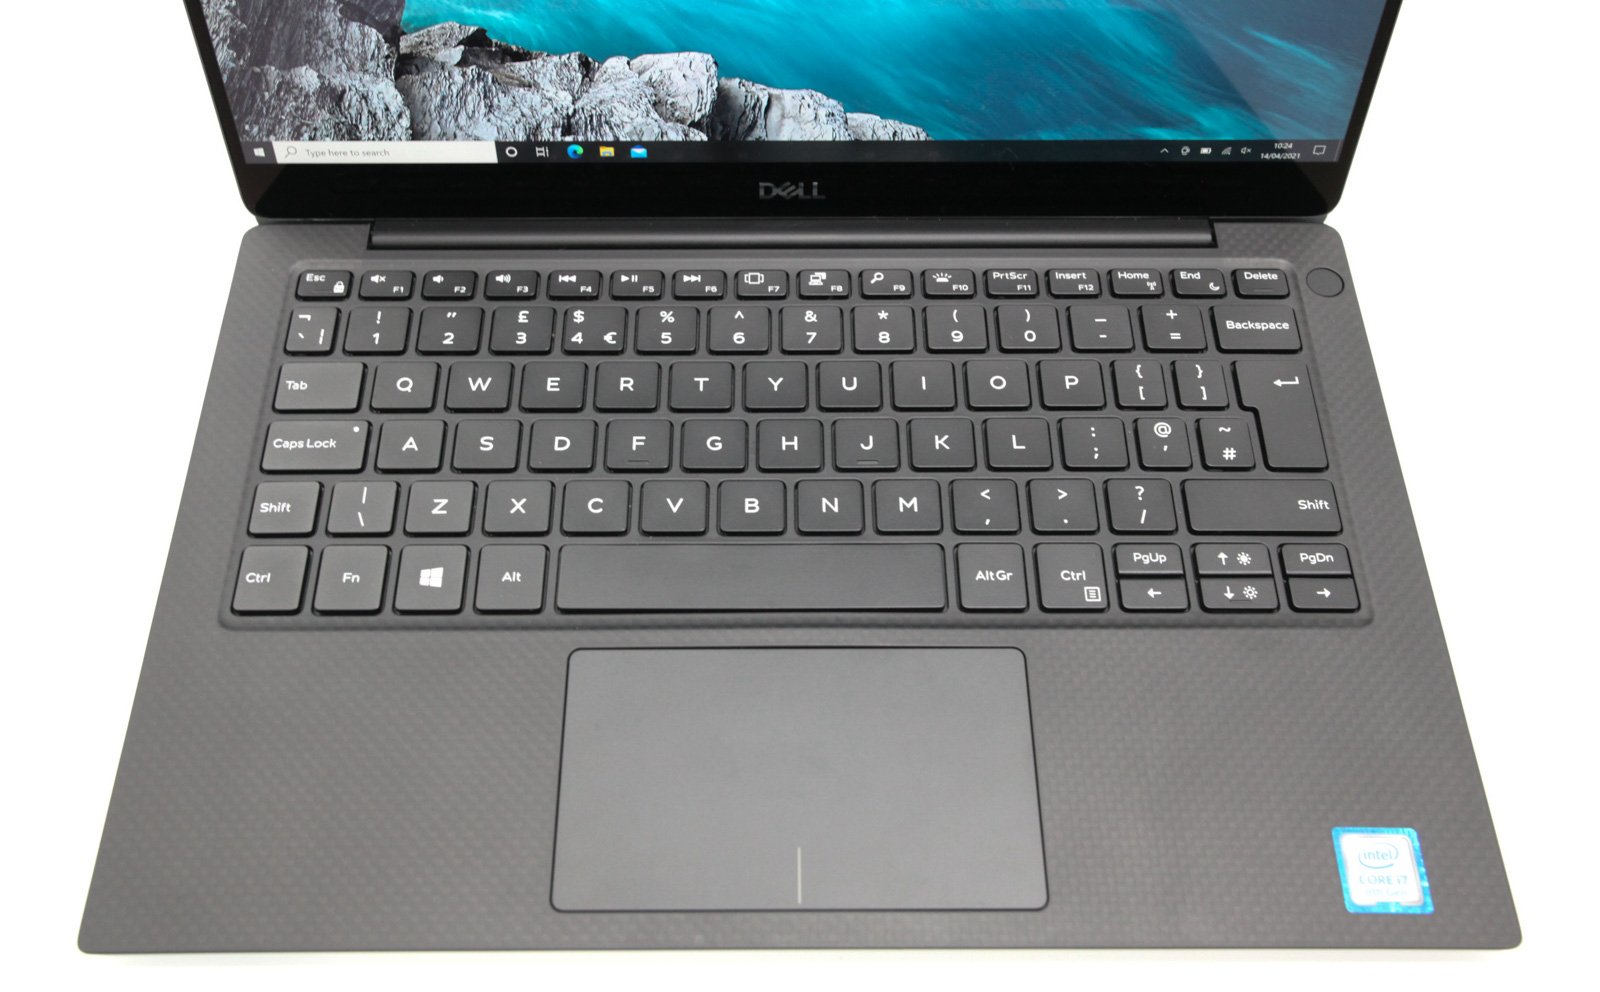 Dell XPS 13 9380 4K Touch Laptop: Core i7 8th Gen, 512GB SSD, 16GB RAM, Warranty - CruiseTech